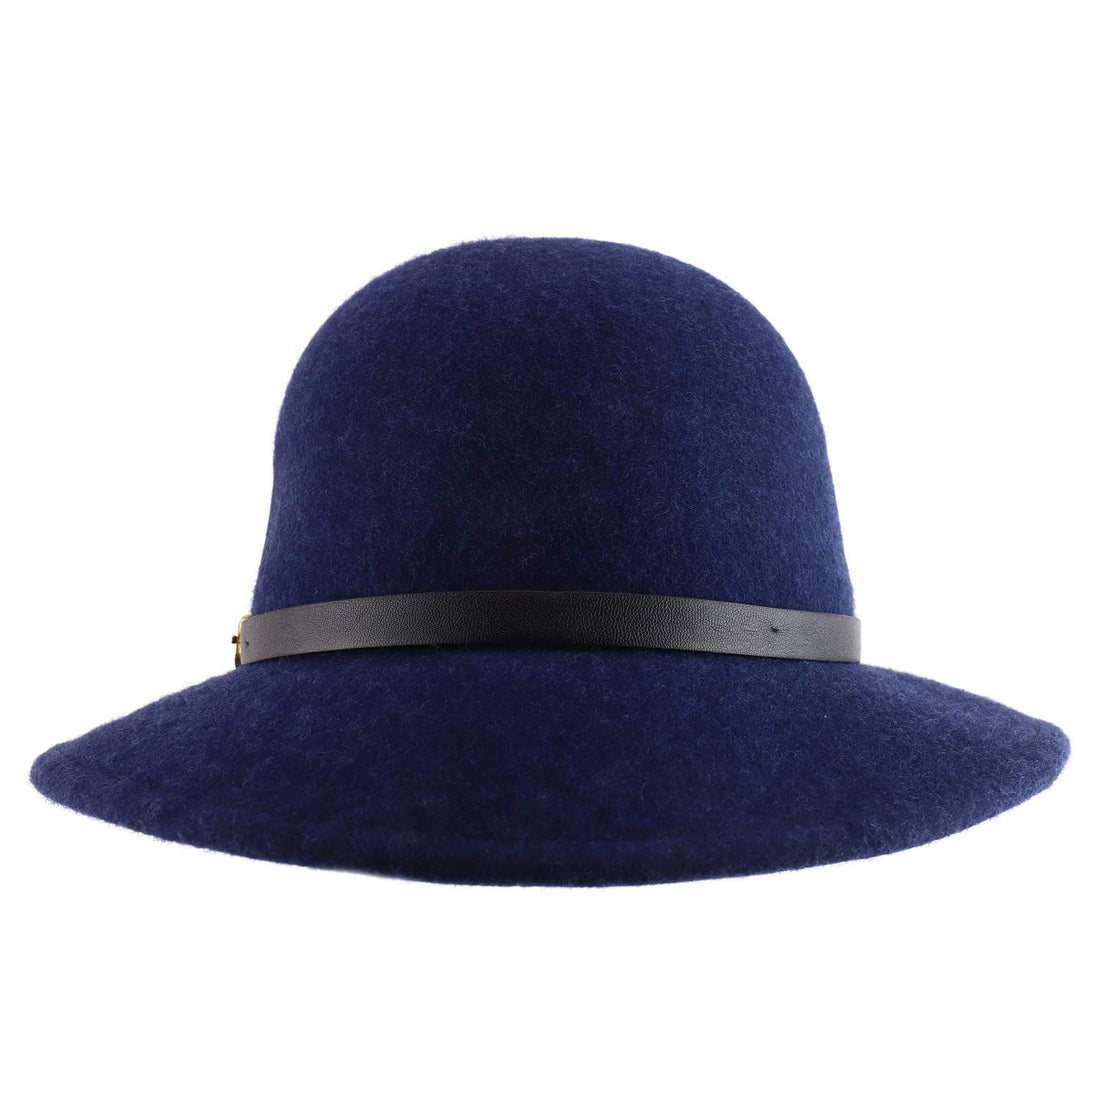 Trendy Apparel Shop Women's Wool Felt Leather Buckle Band Bucket Cloche Hat